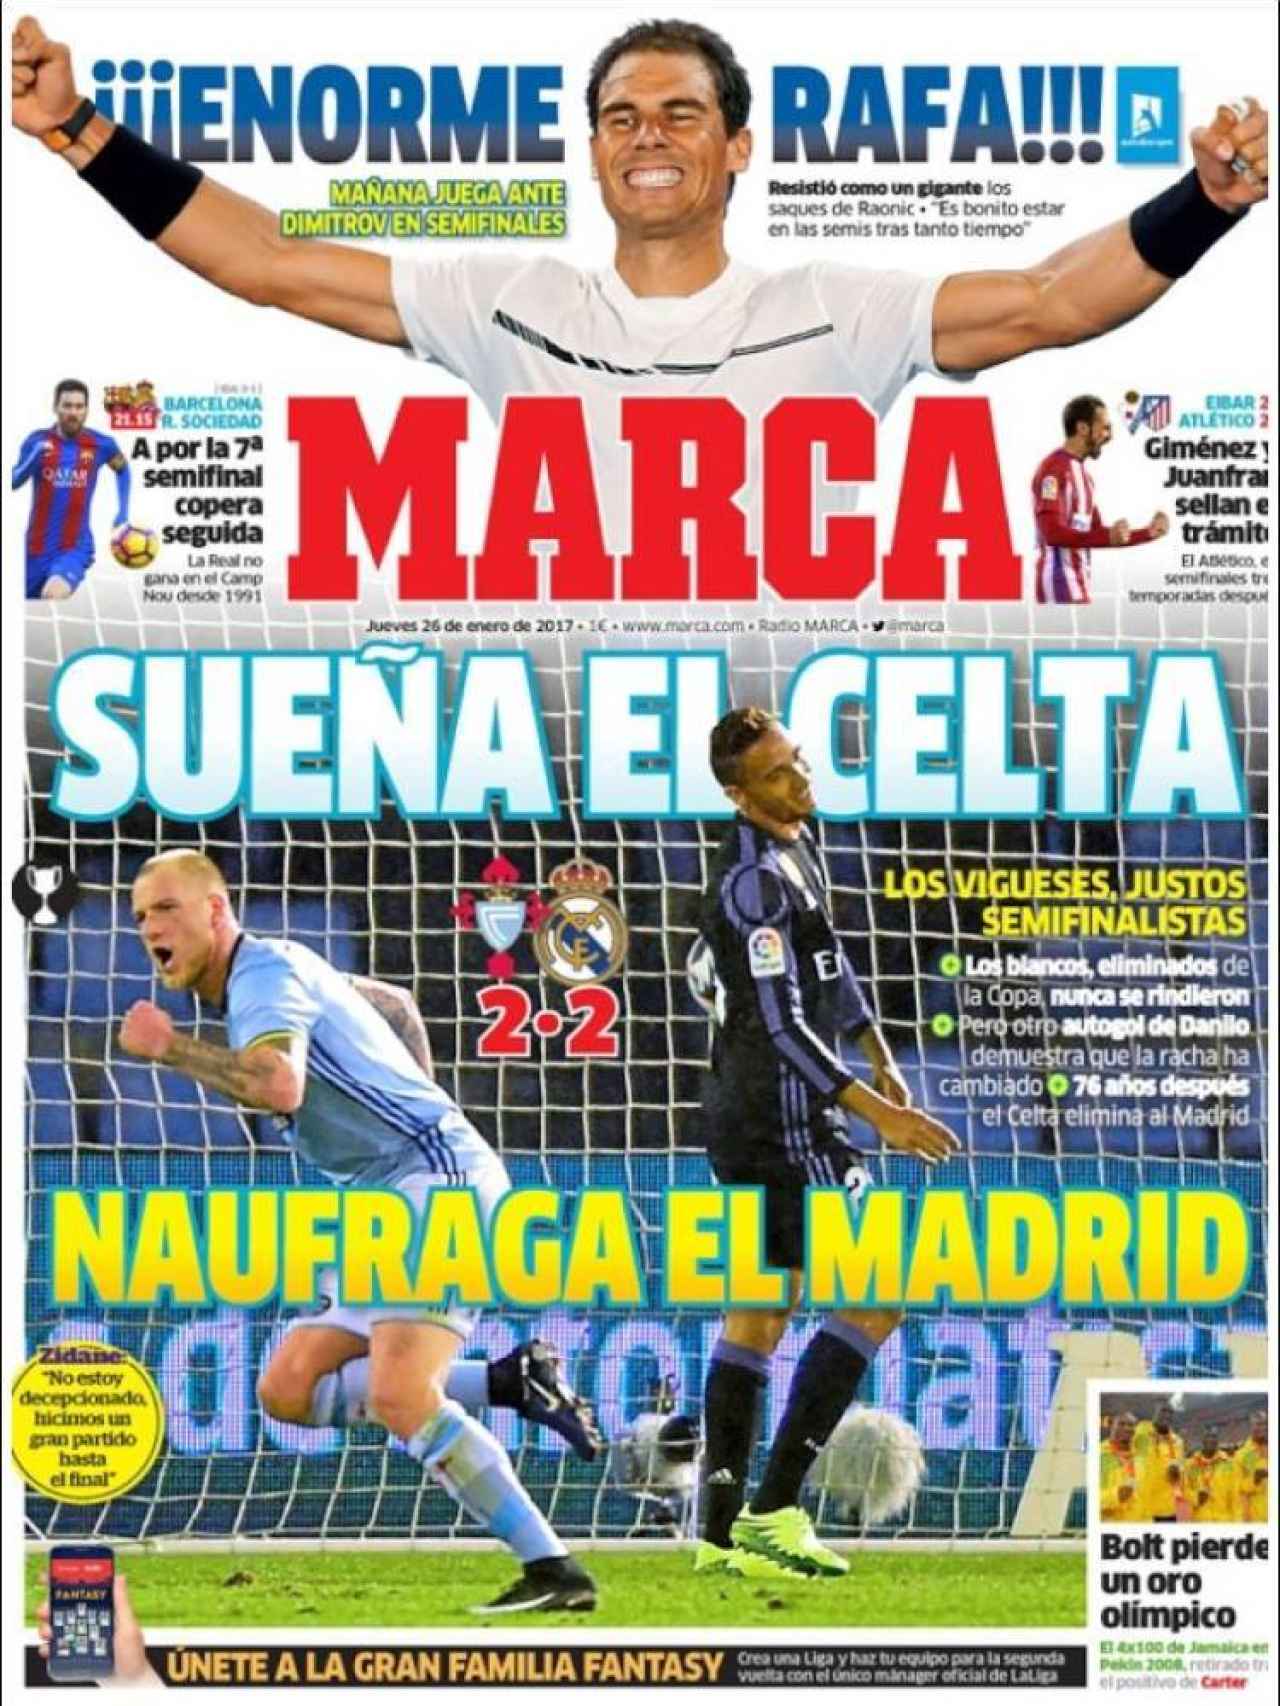 La eliminación copera del Madrid y Nadal destacan en la portada de MARCA.